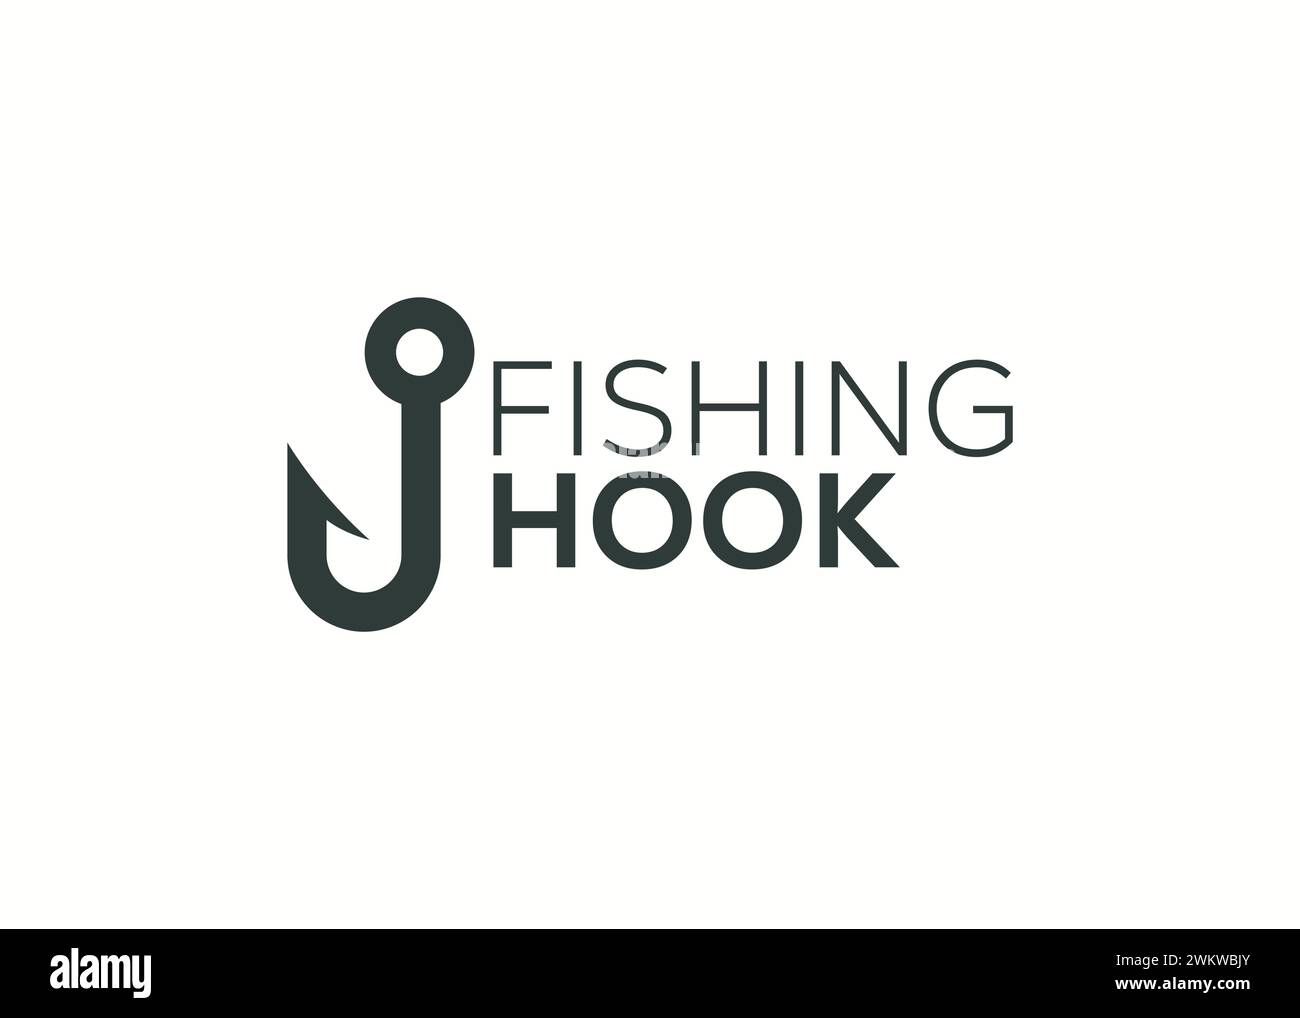 Minimalist fishing hook logo design vector template. Fishing hook vector illustration. Modern fish hook logo Stock Vector